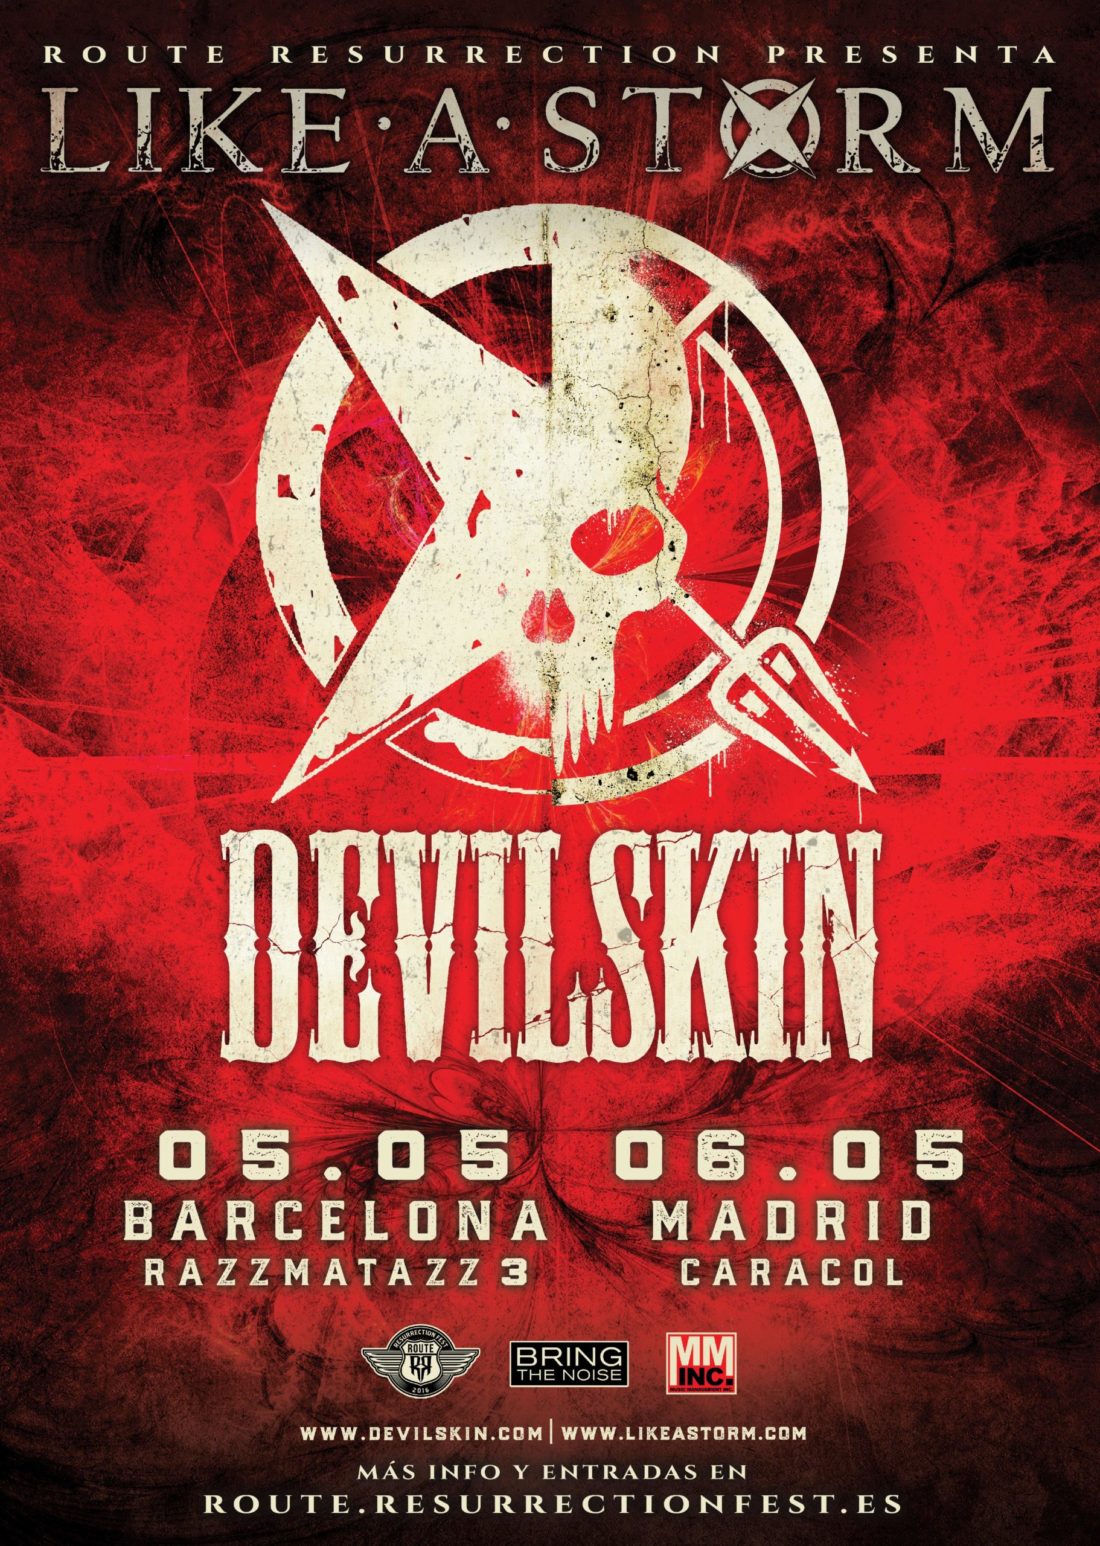 Nueva gira Route Resurrection: Like a Storm y Devilskin visitan España como cabezas de cartel